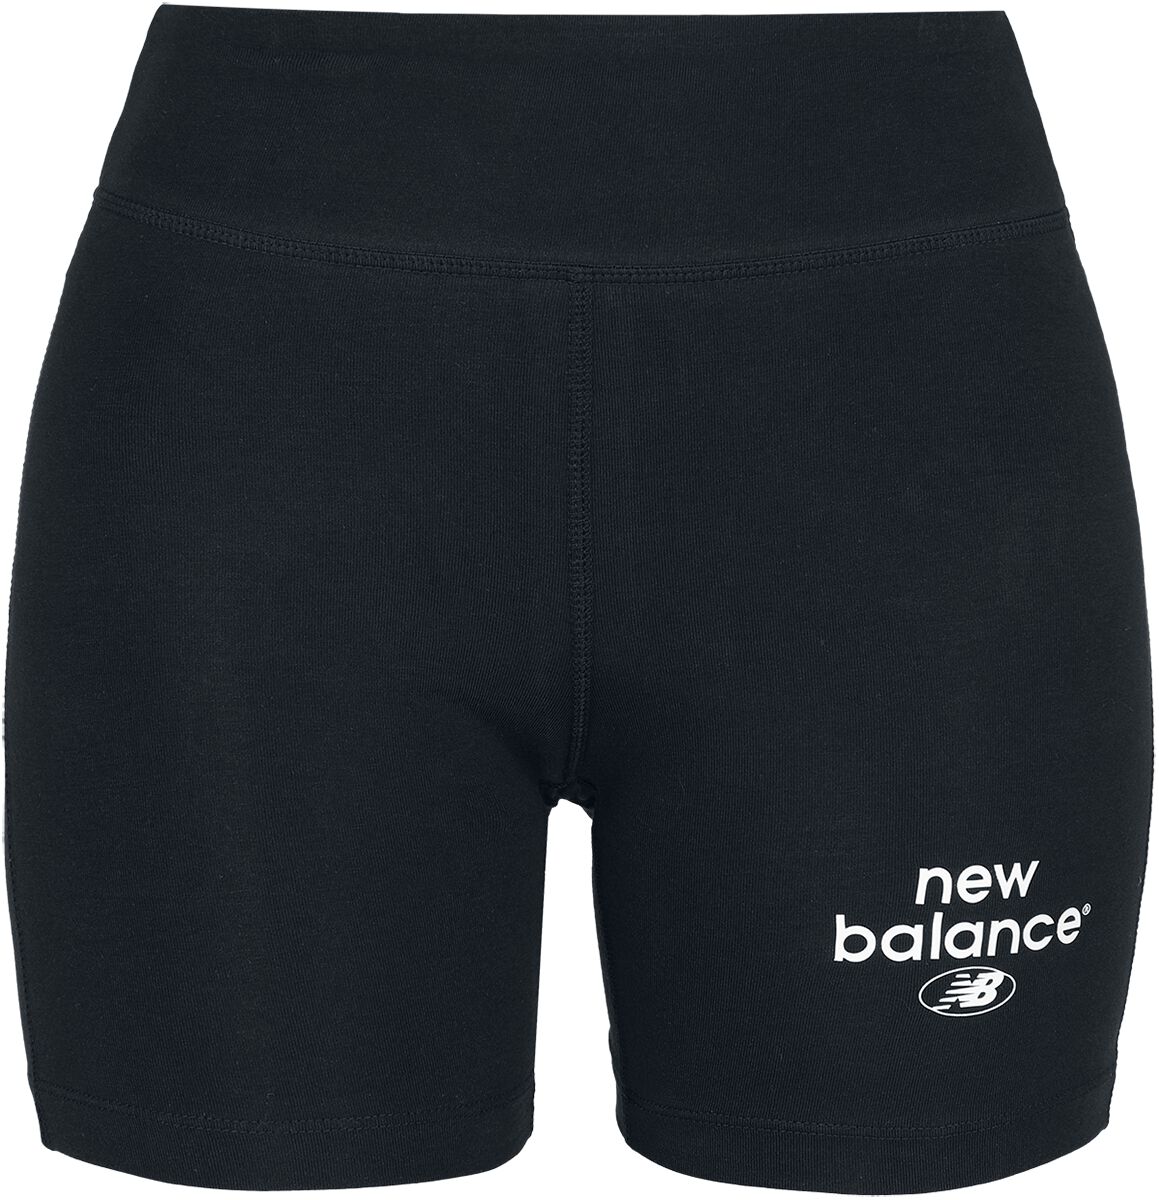 Short de New Balance - NB Essentials Fitted Short - XS à XL - pour Femme - noir